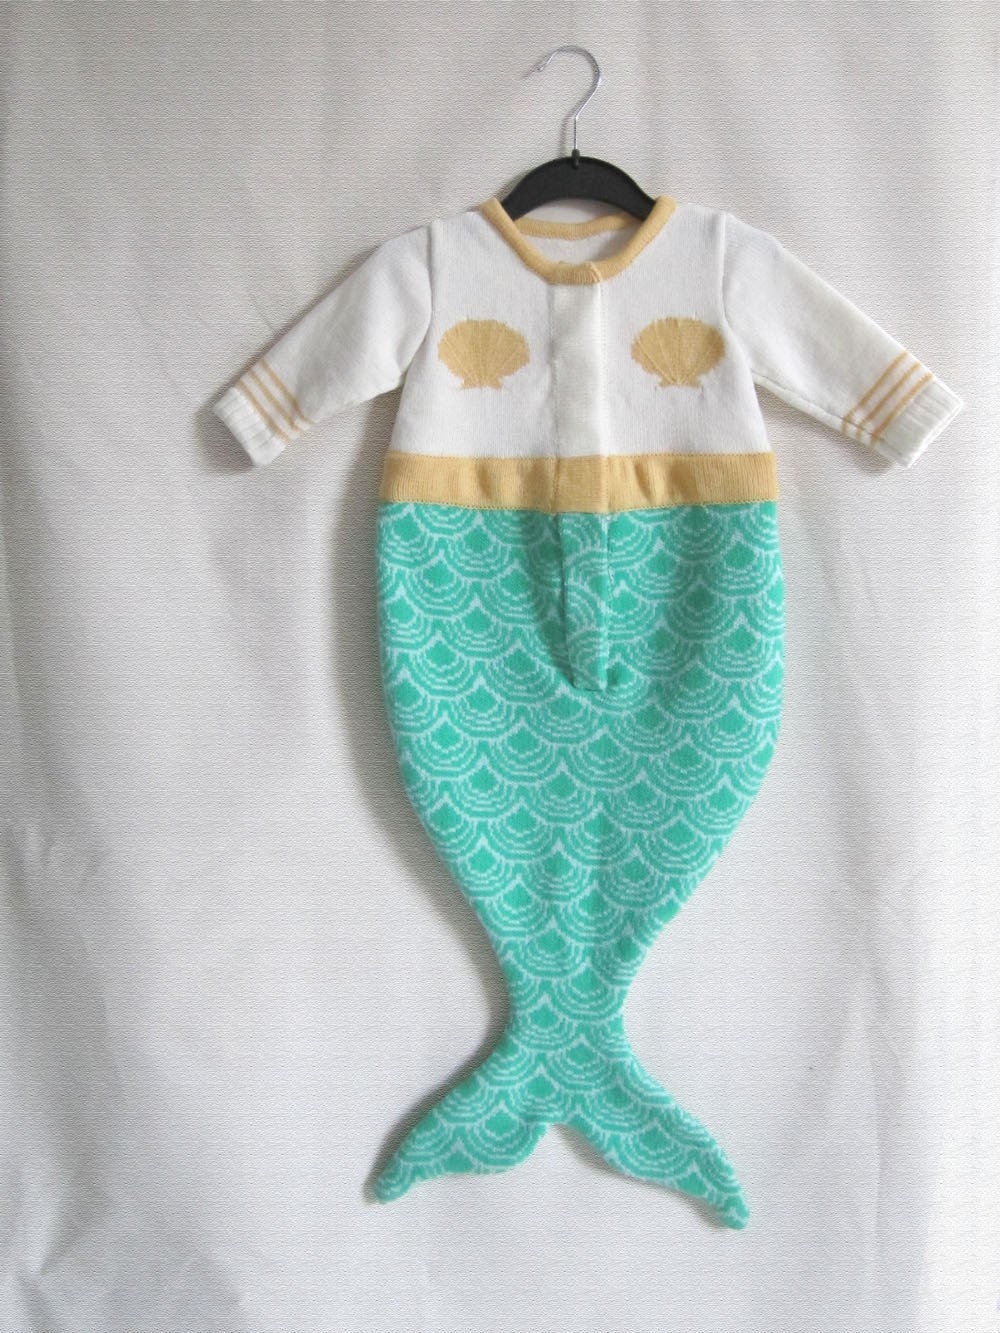 Handmade Knitted Mermaid Sleeping Bag